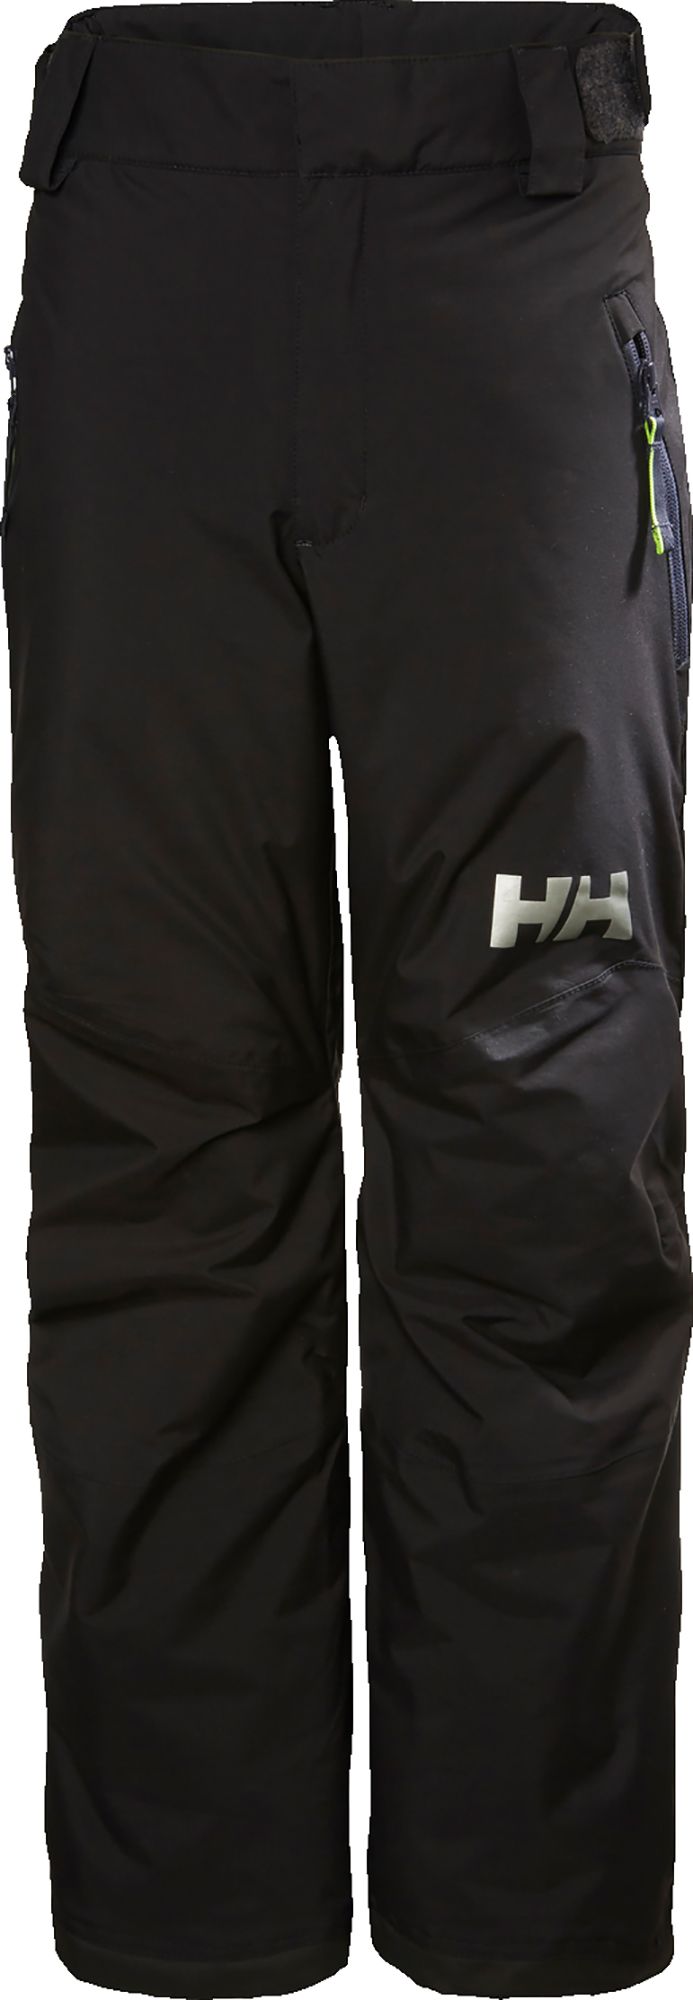 Photos - Ski Wear Helly Hansen Junior's Legendary Pants, Boys', Size 8, Black 21HLYYYLGNDRYP 